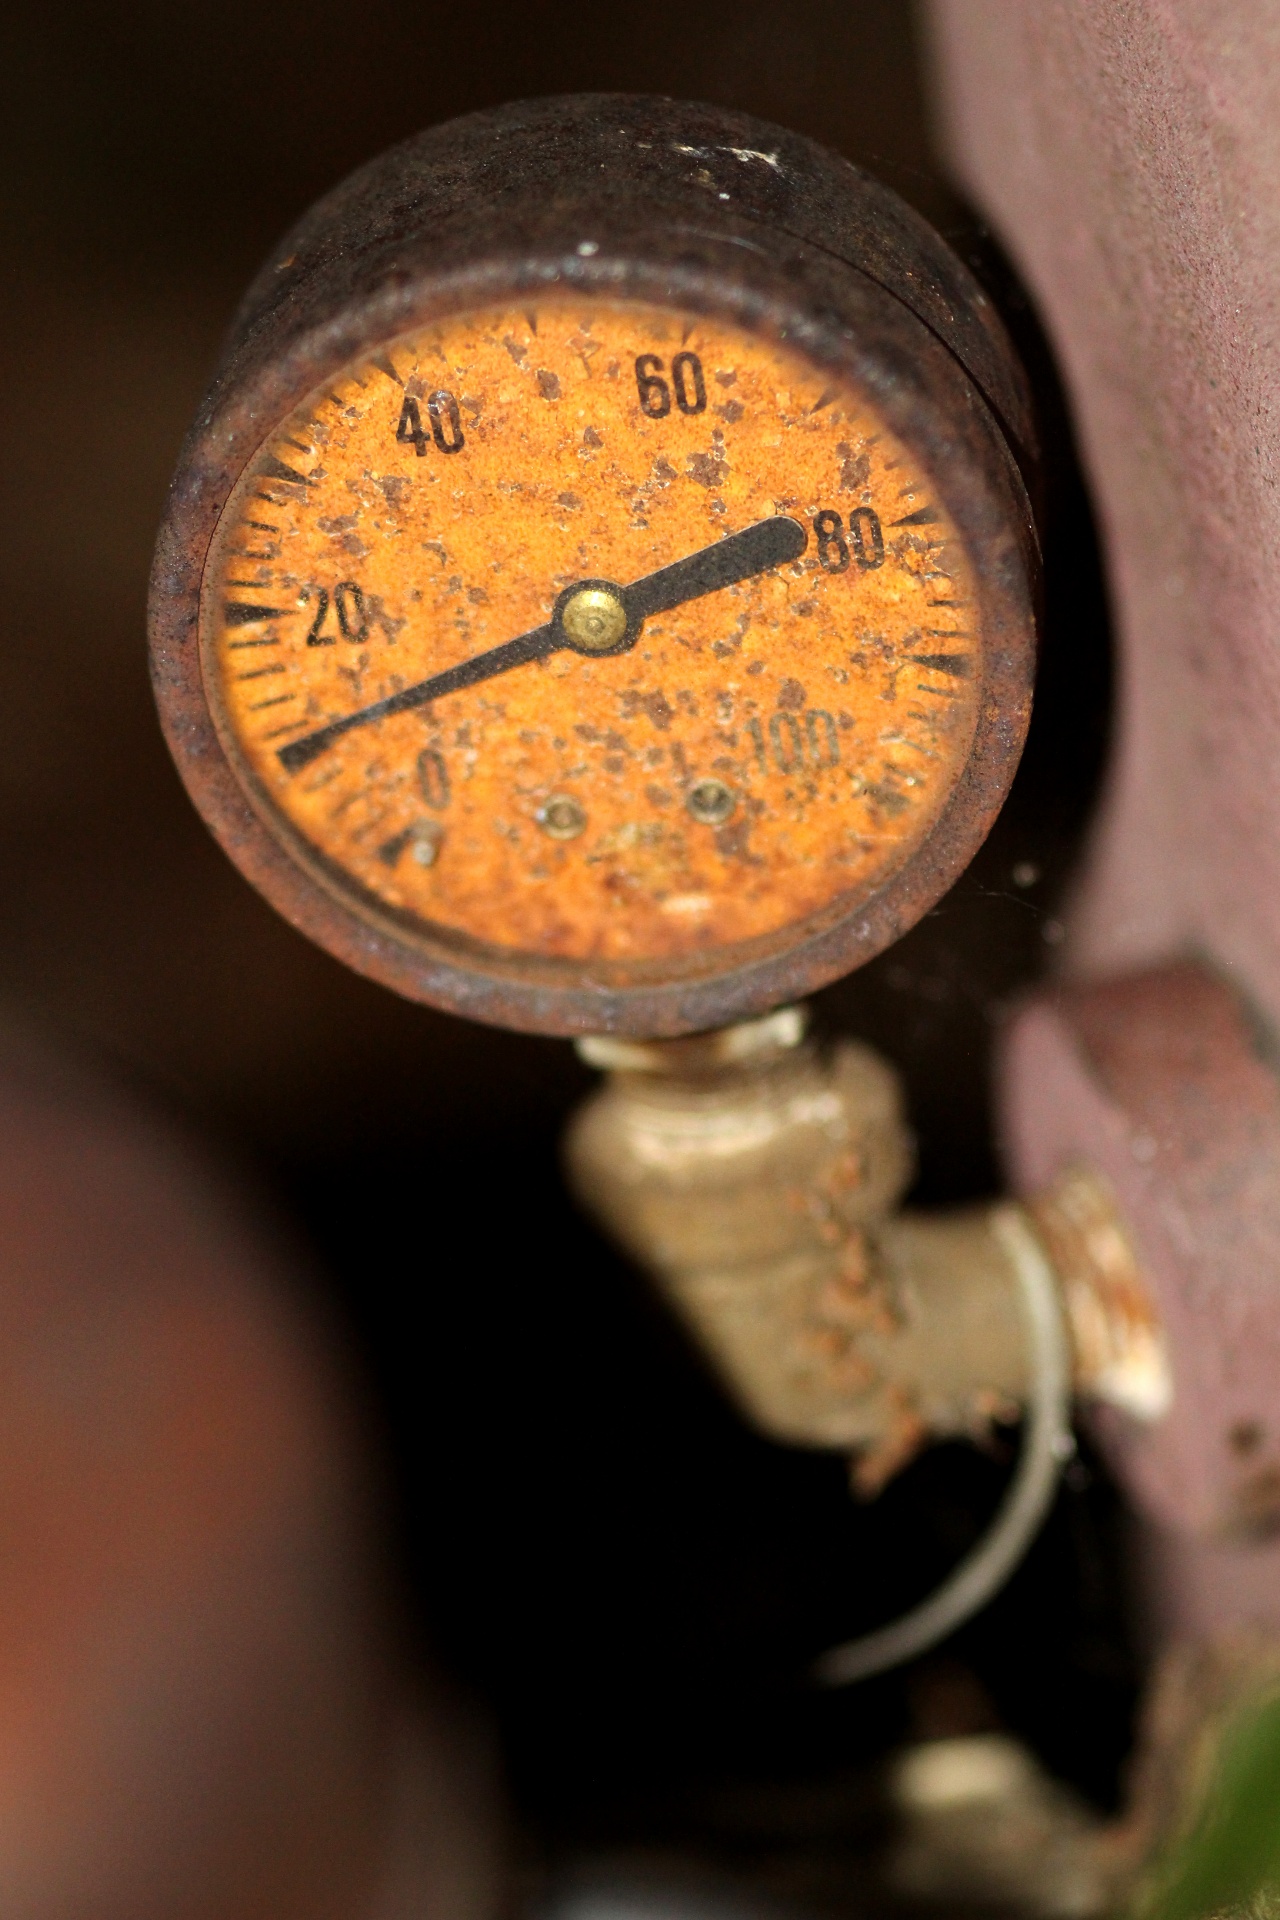 gauges water well gauge antique gauge free photo